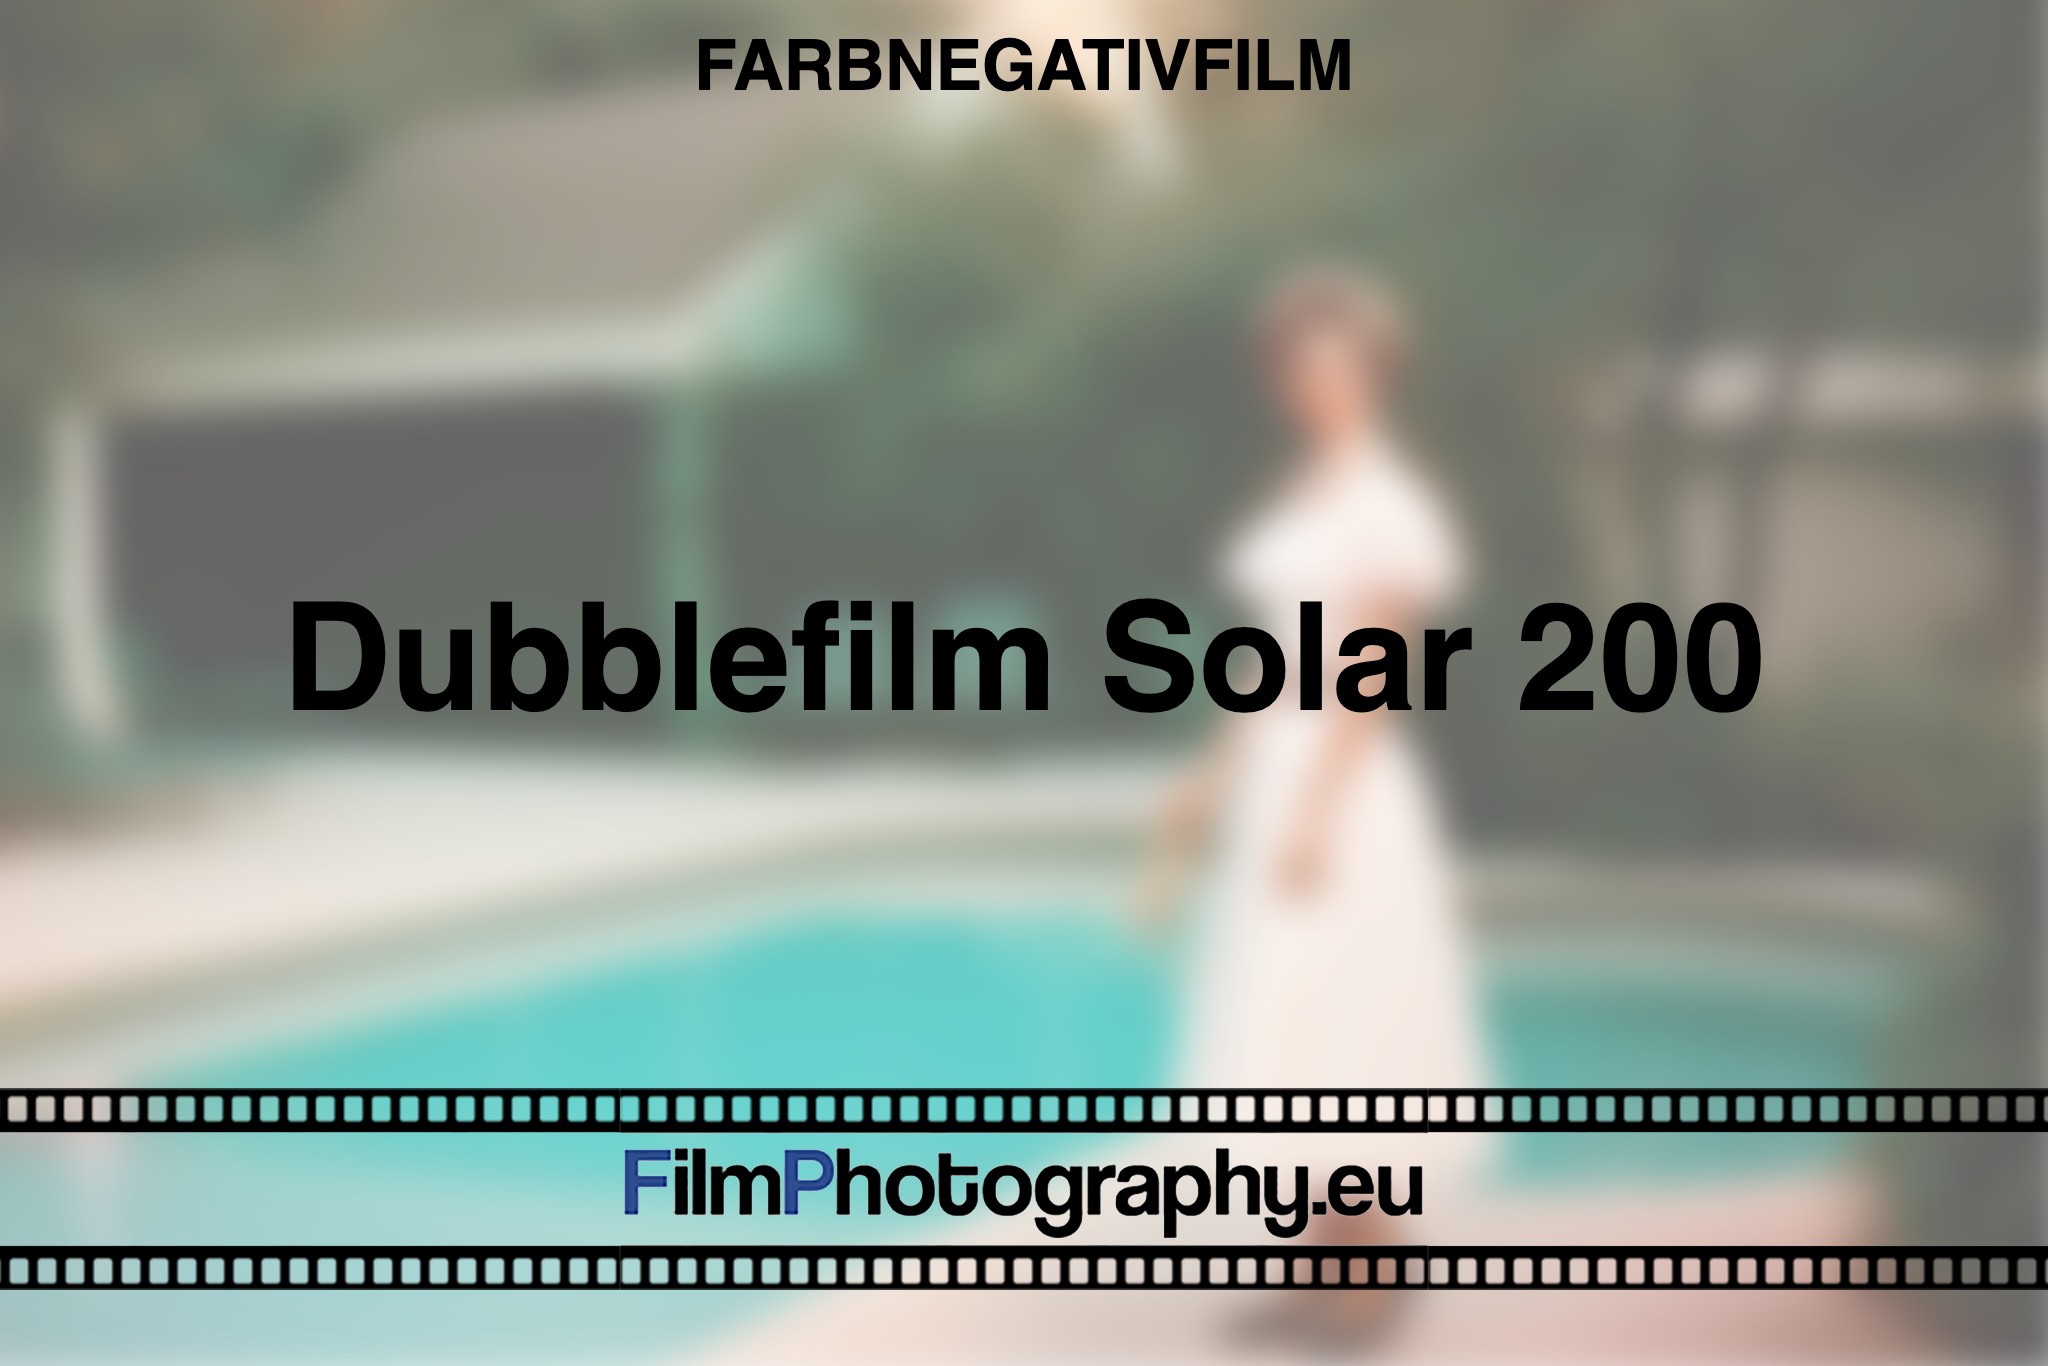 dubblefilm-solar-200-farbnegativfilm-bnv